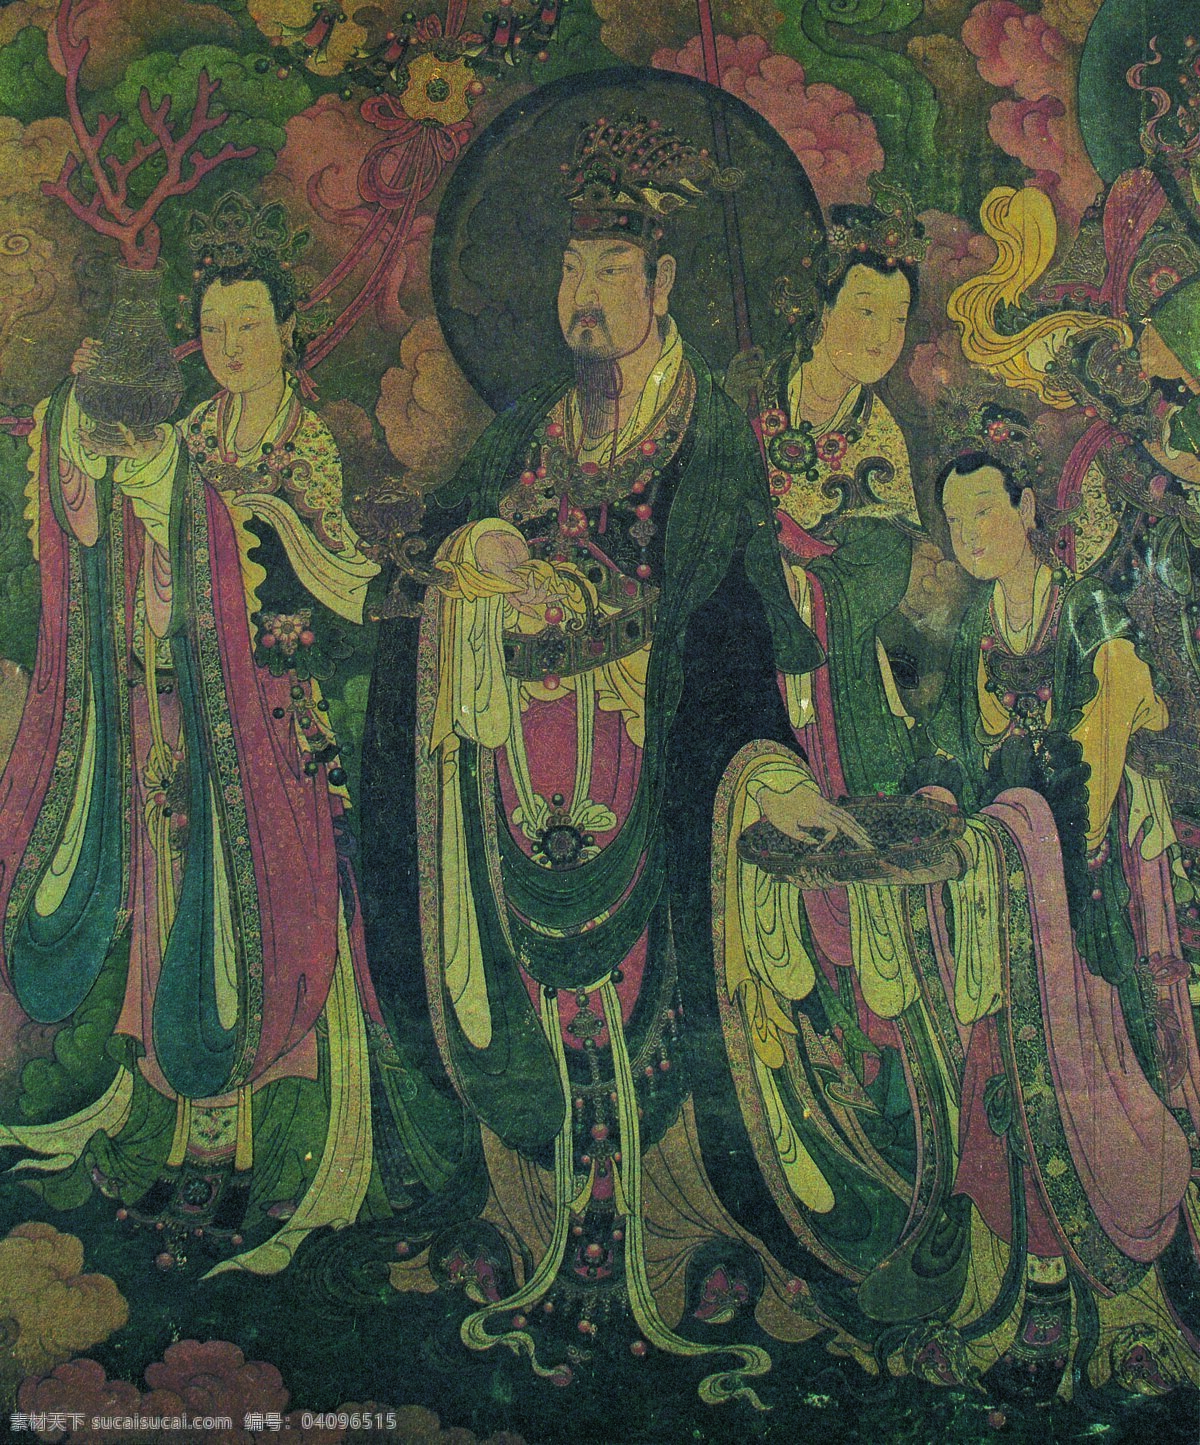 法海 寺 壁画 31 大梵天 其三 侍女 设计素材 中国古典 壁画世界 书画美术 灰色